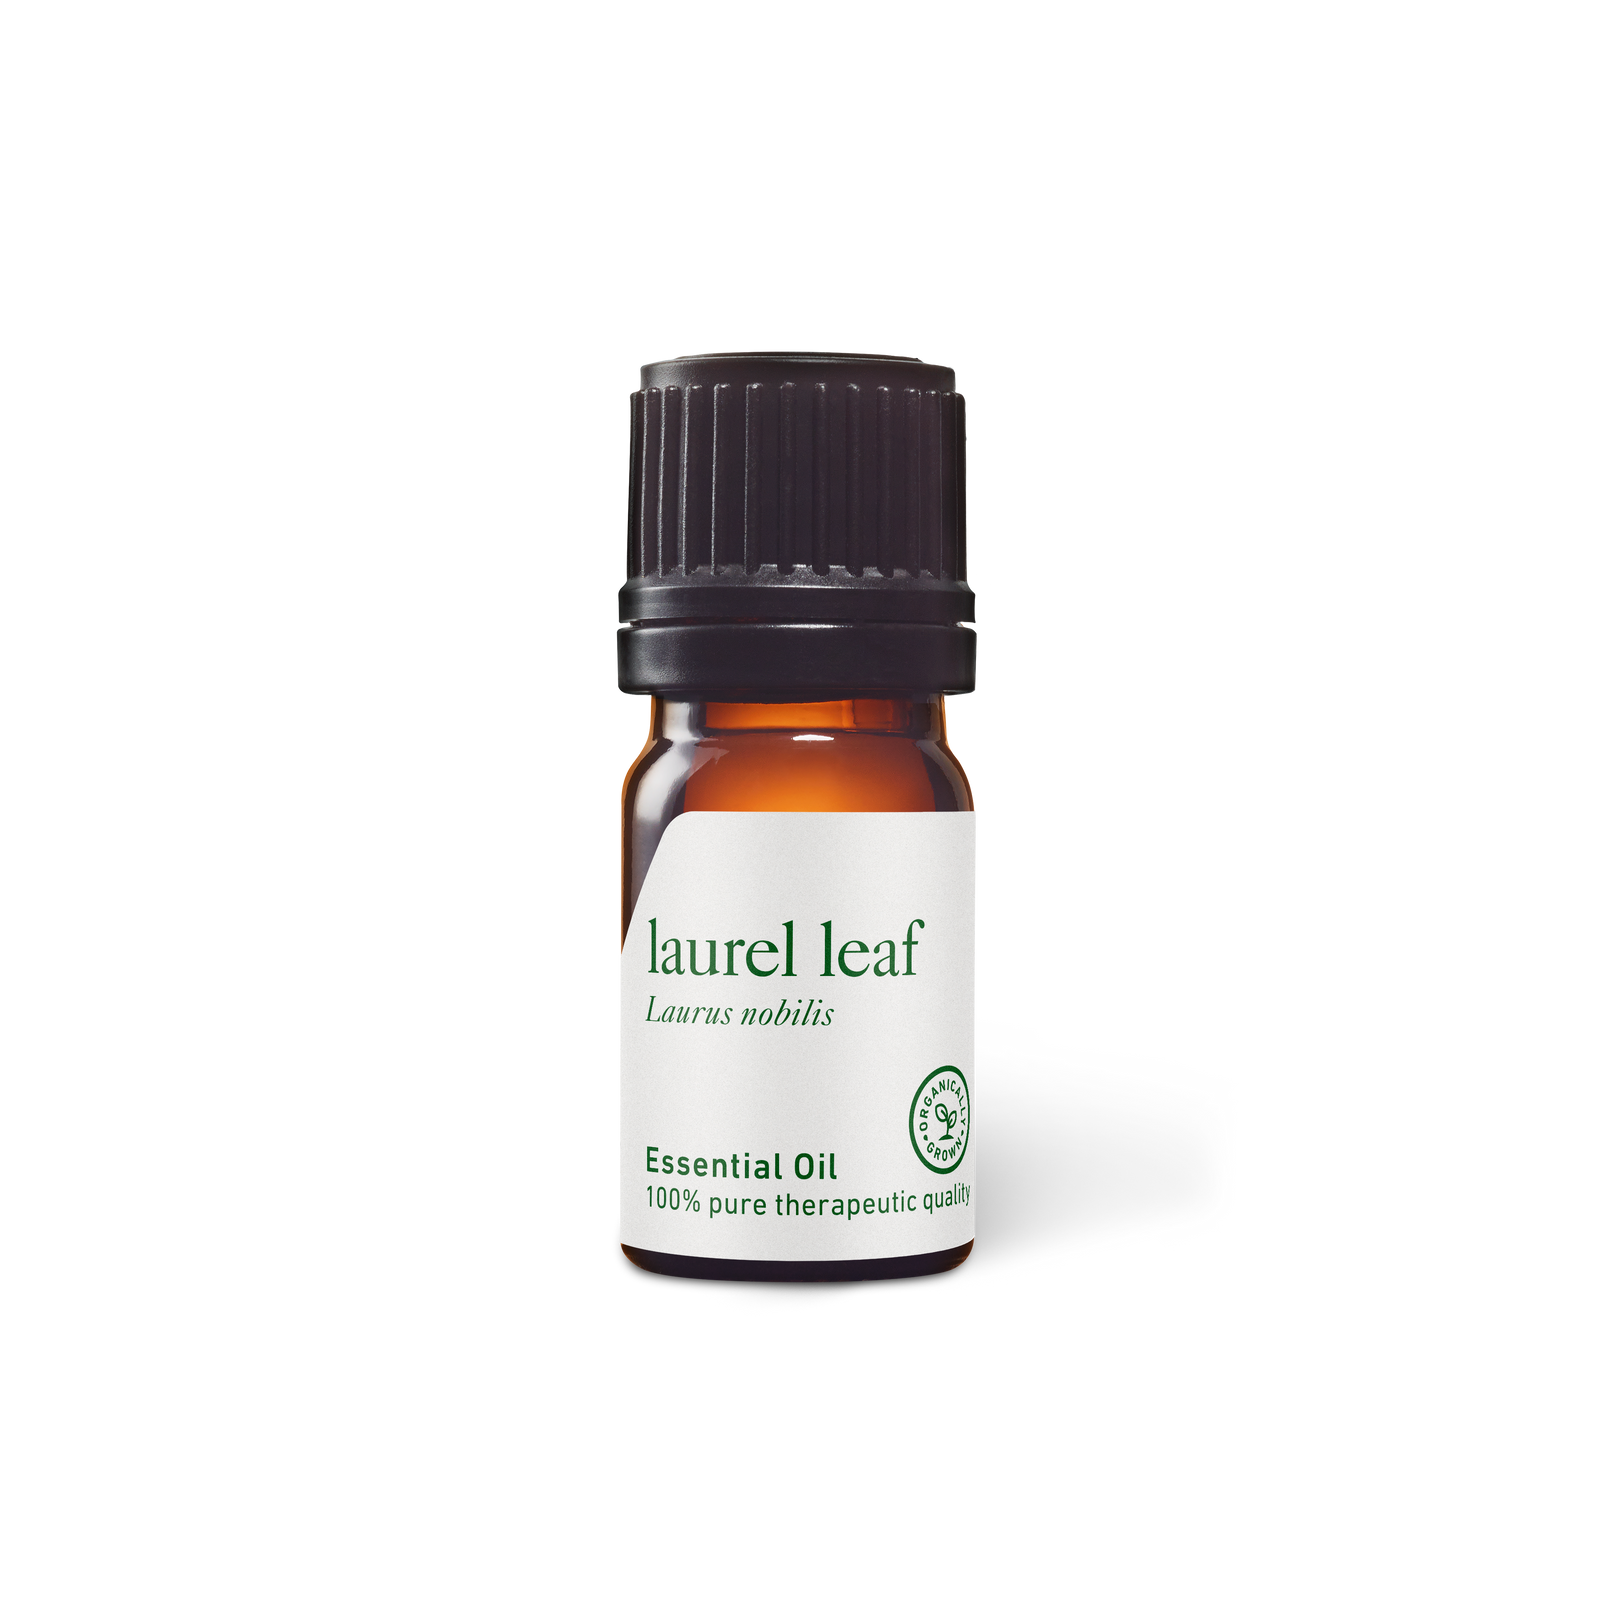 Laurel Leaf Oil